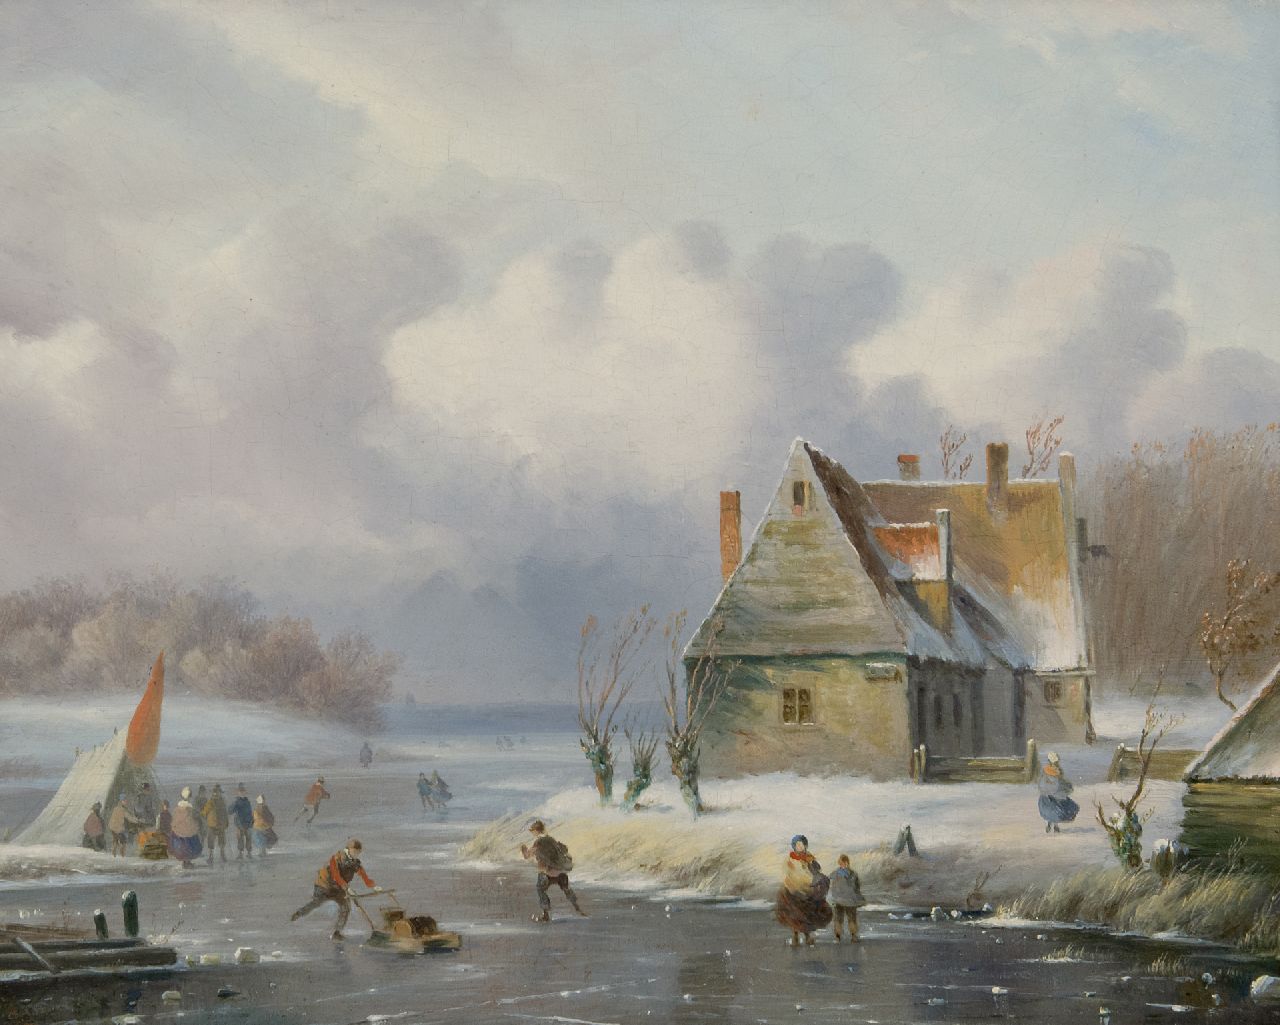 Carl Eduard Ahrendts | Winterlandschap met schaatsers op het ijs, olieverf op paneel, 28,7 x 35,1 cm, gesigneerd l.o.